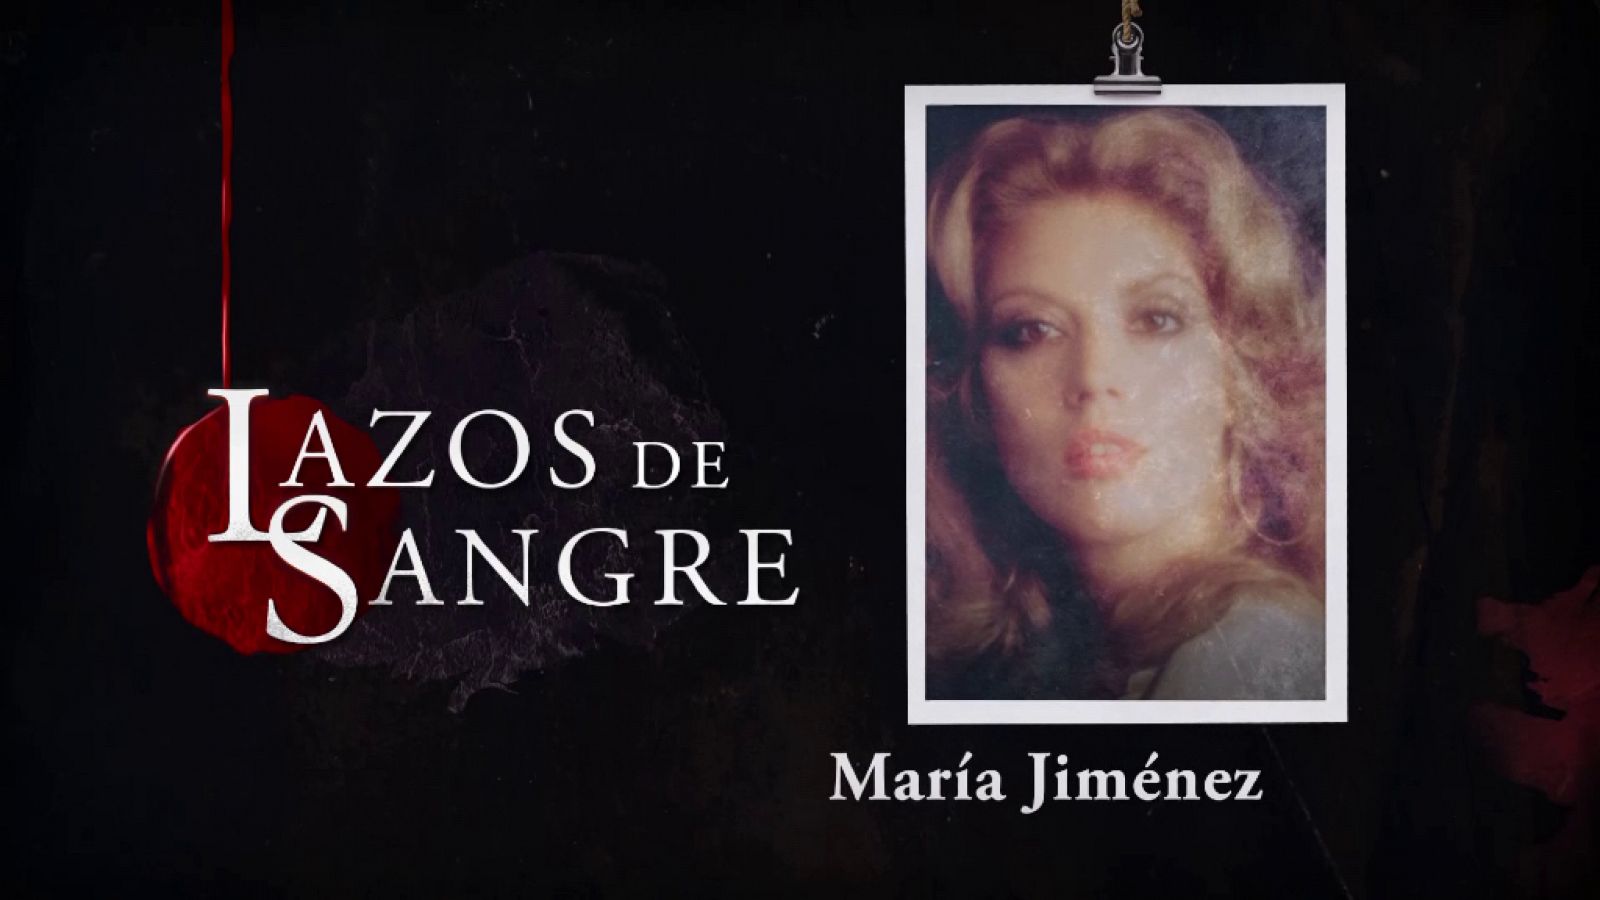 Lazos de sangre - María Jiménez, resumen de su vida